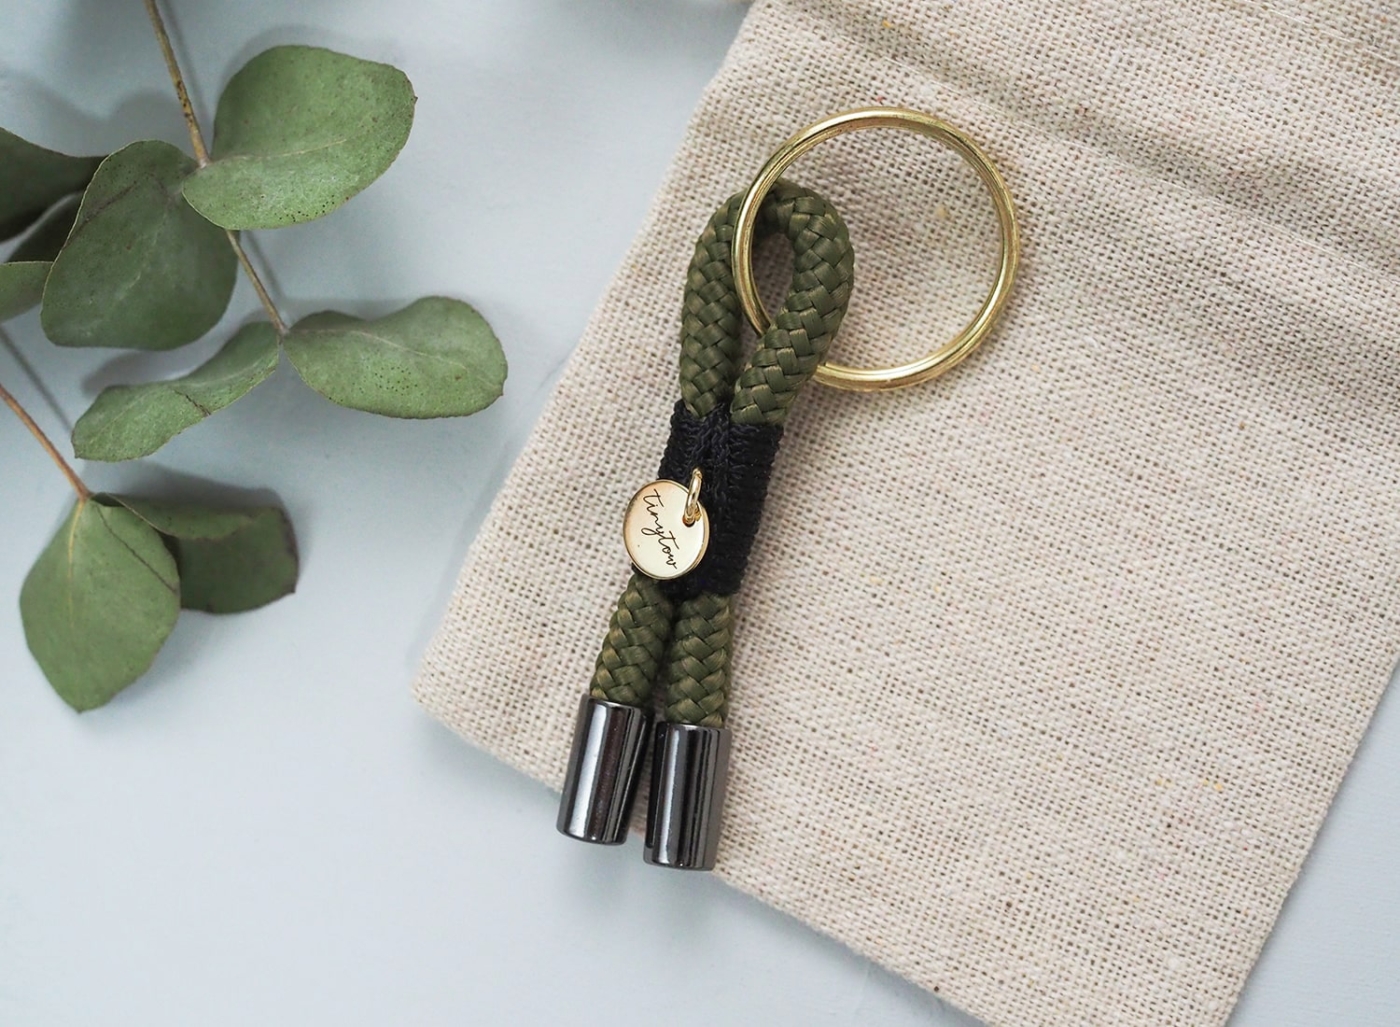 Kleiner Schlüsselanhänger aus grünem Tau mit schwarzen und goldenen Elementen.